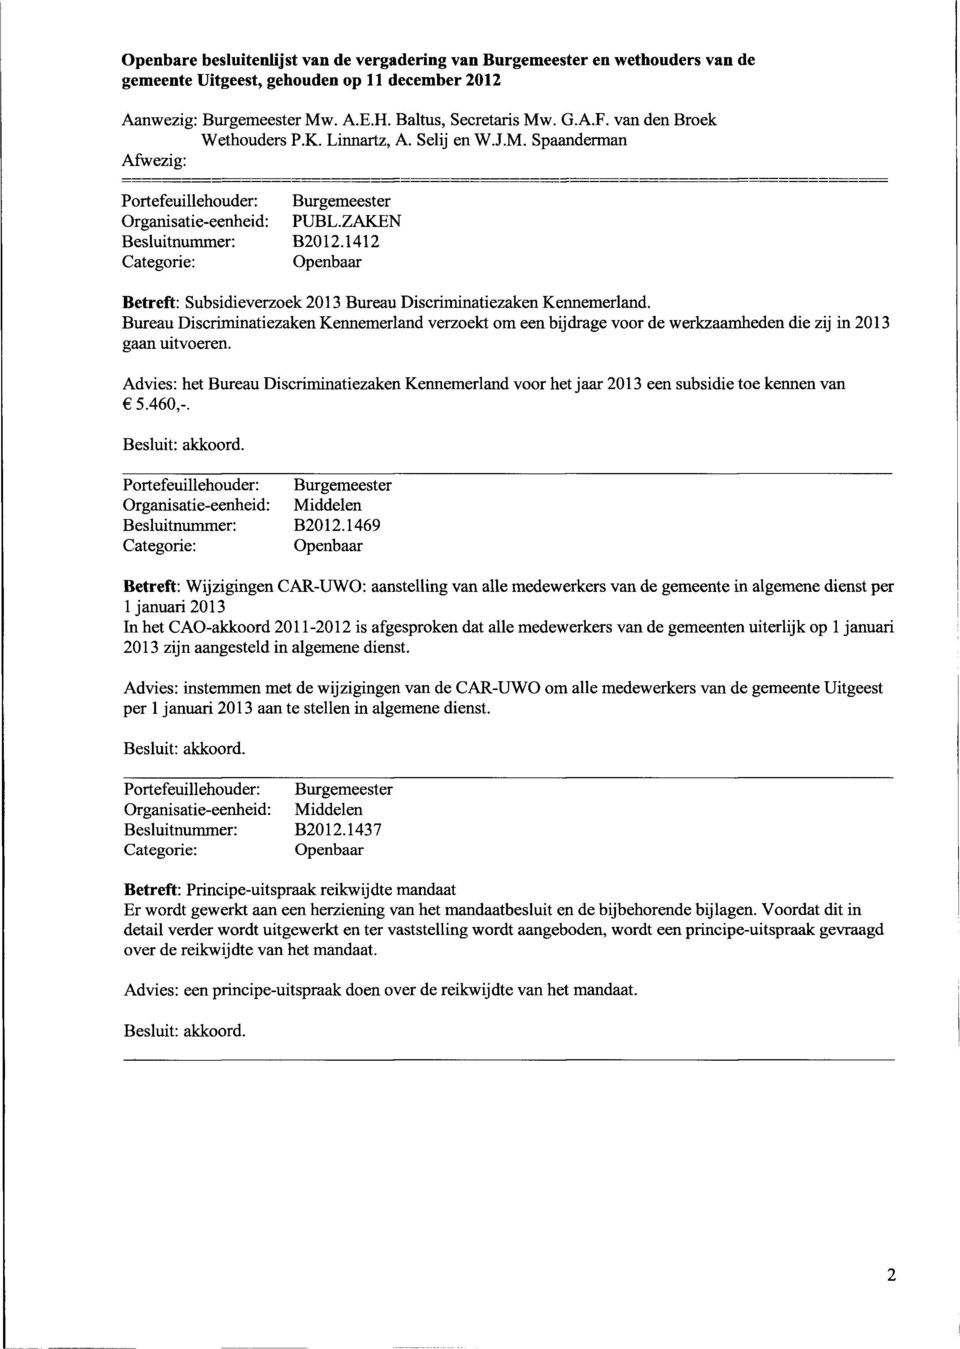 Advies: het Bureau Discriminatiezaken Kennemerland voor het jaar 2013 een subsidie toe kennen van 5.460,-. Besluitnummer: B2012.